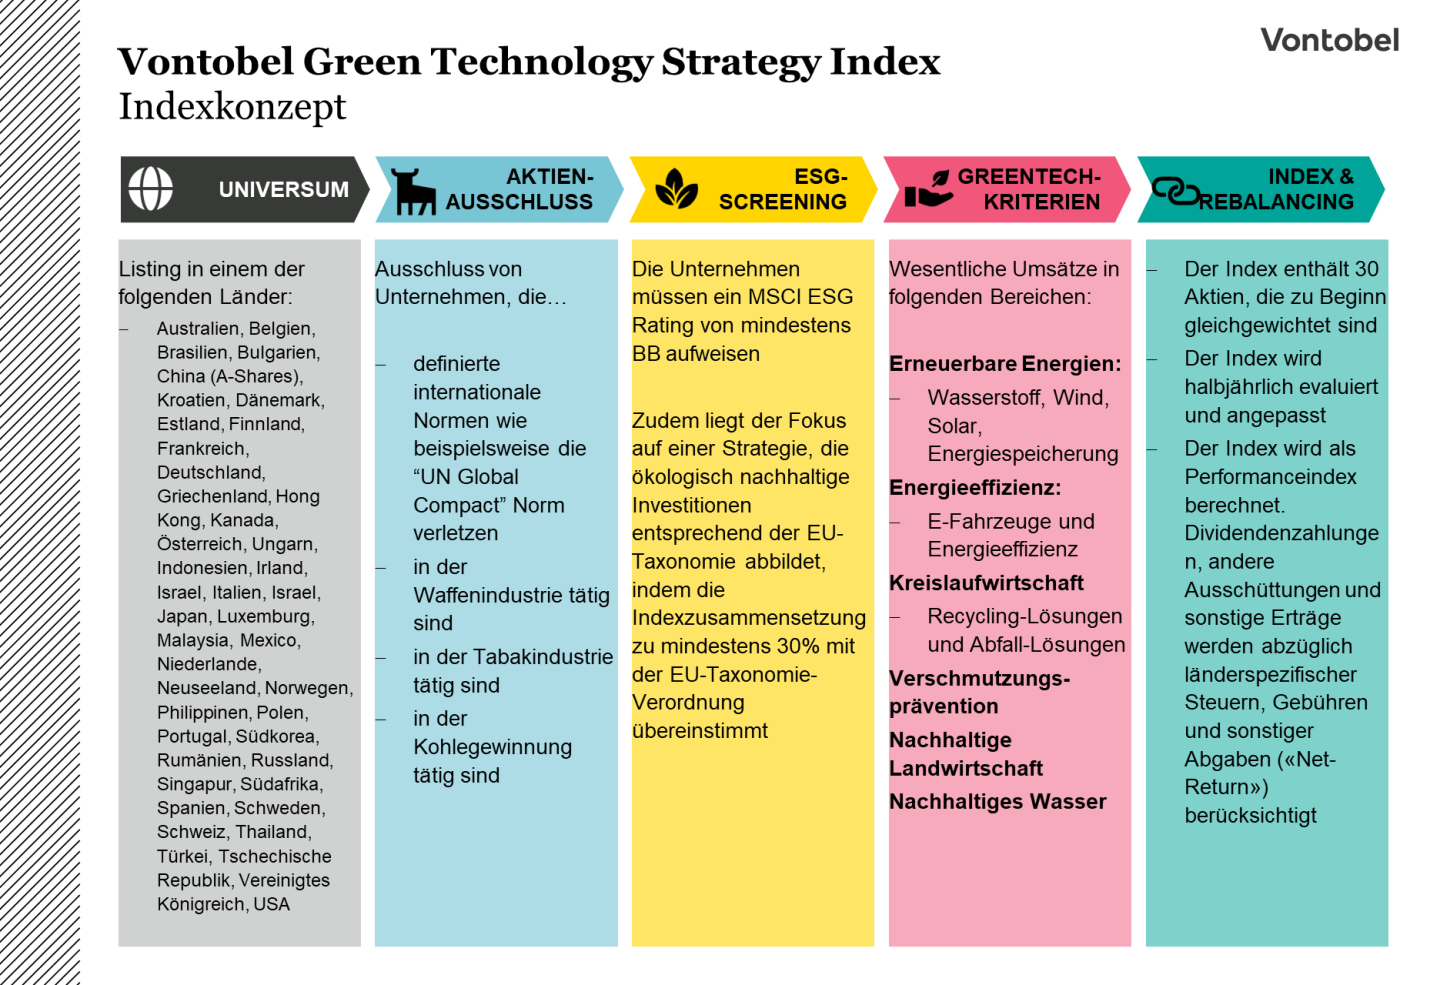 Green Technology Strategy Index - Indexkonzept